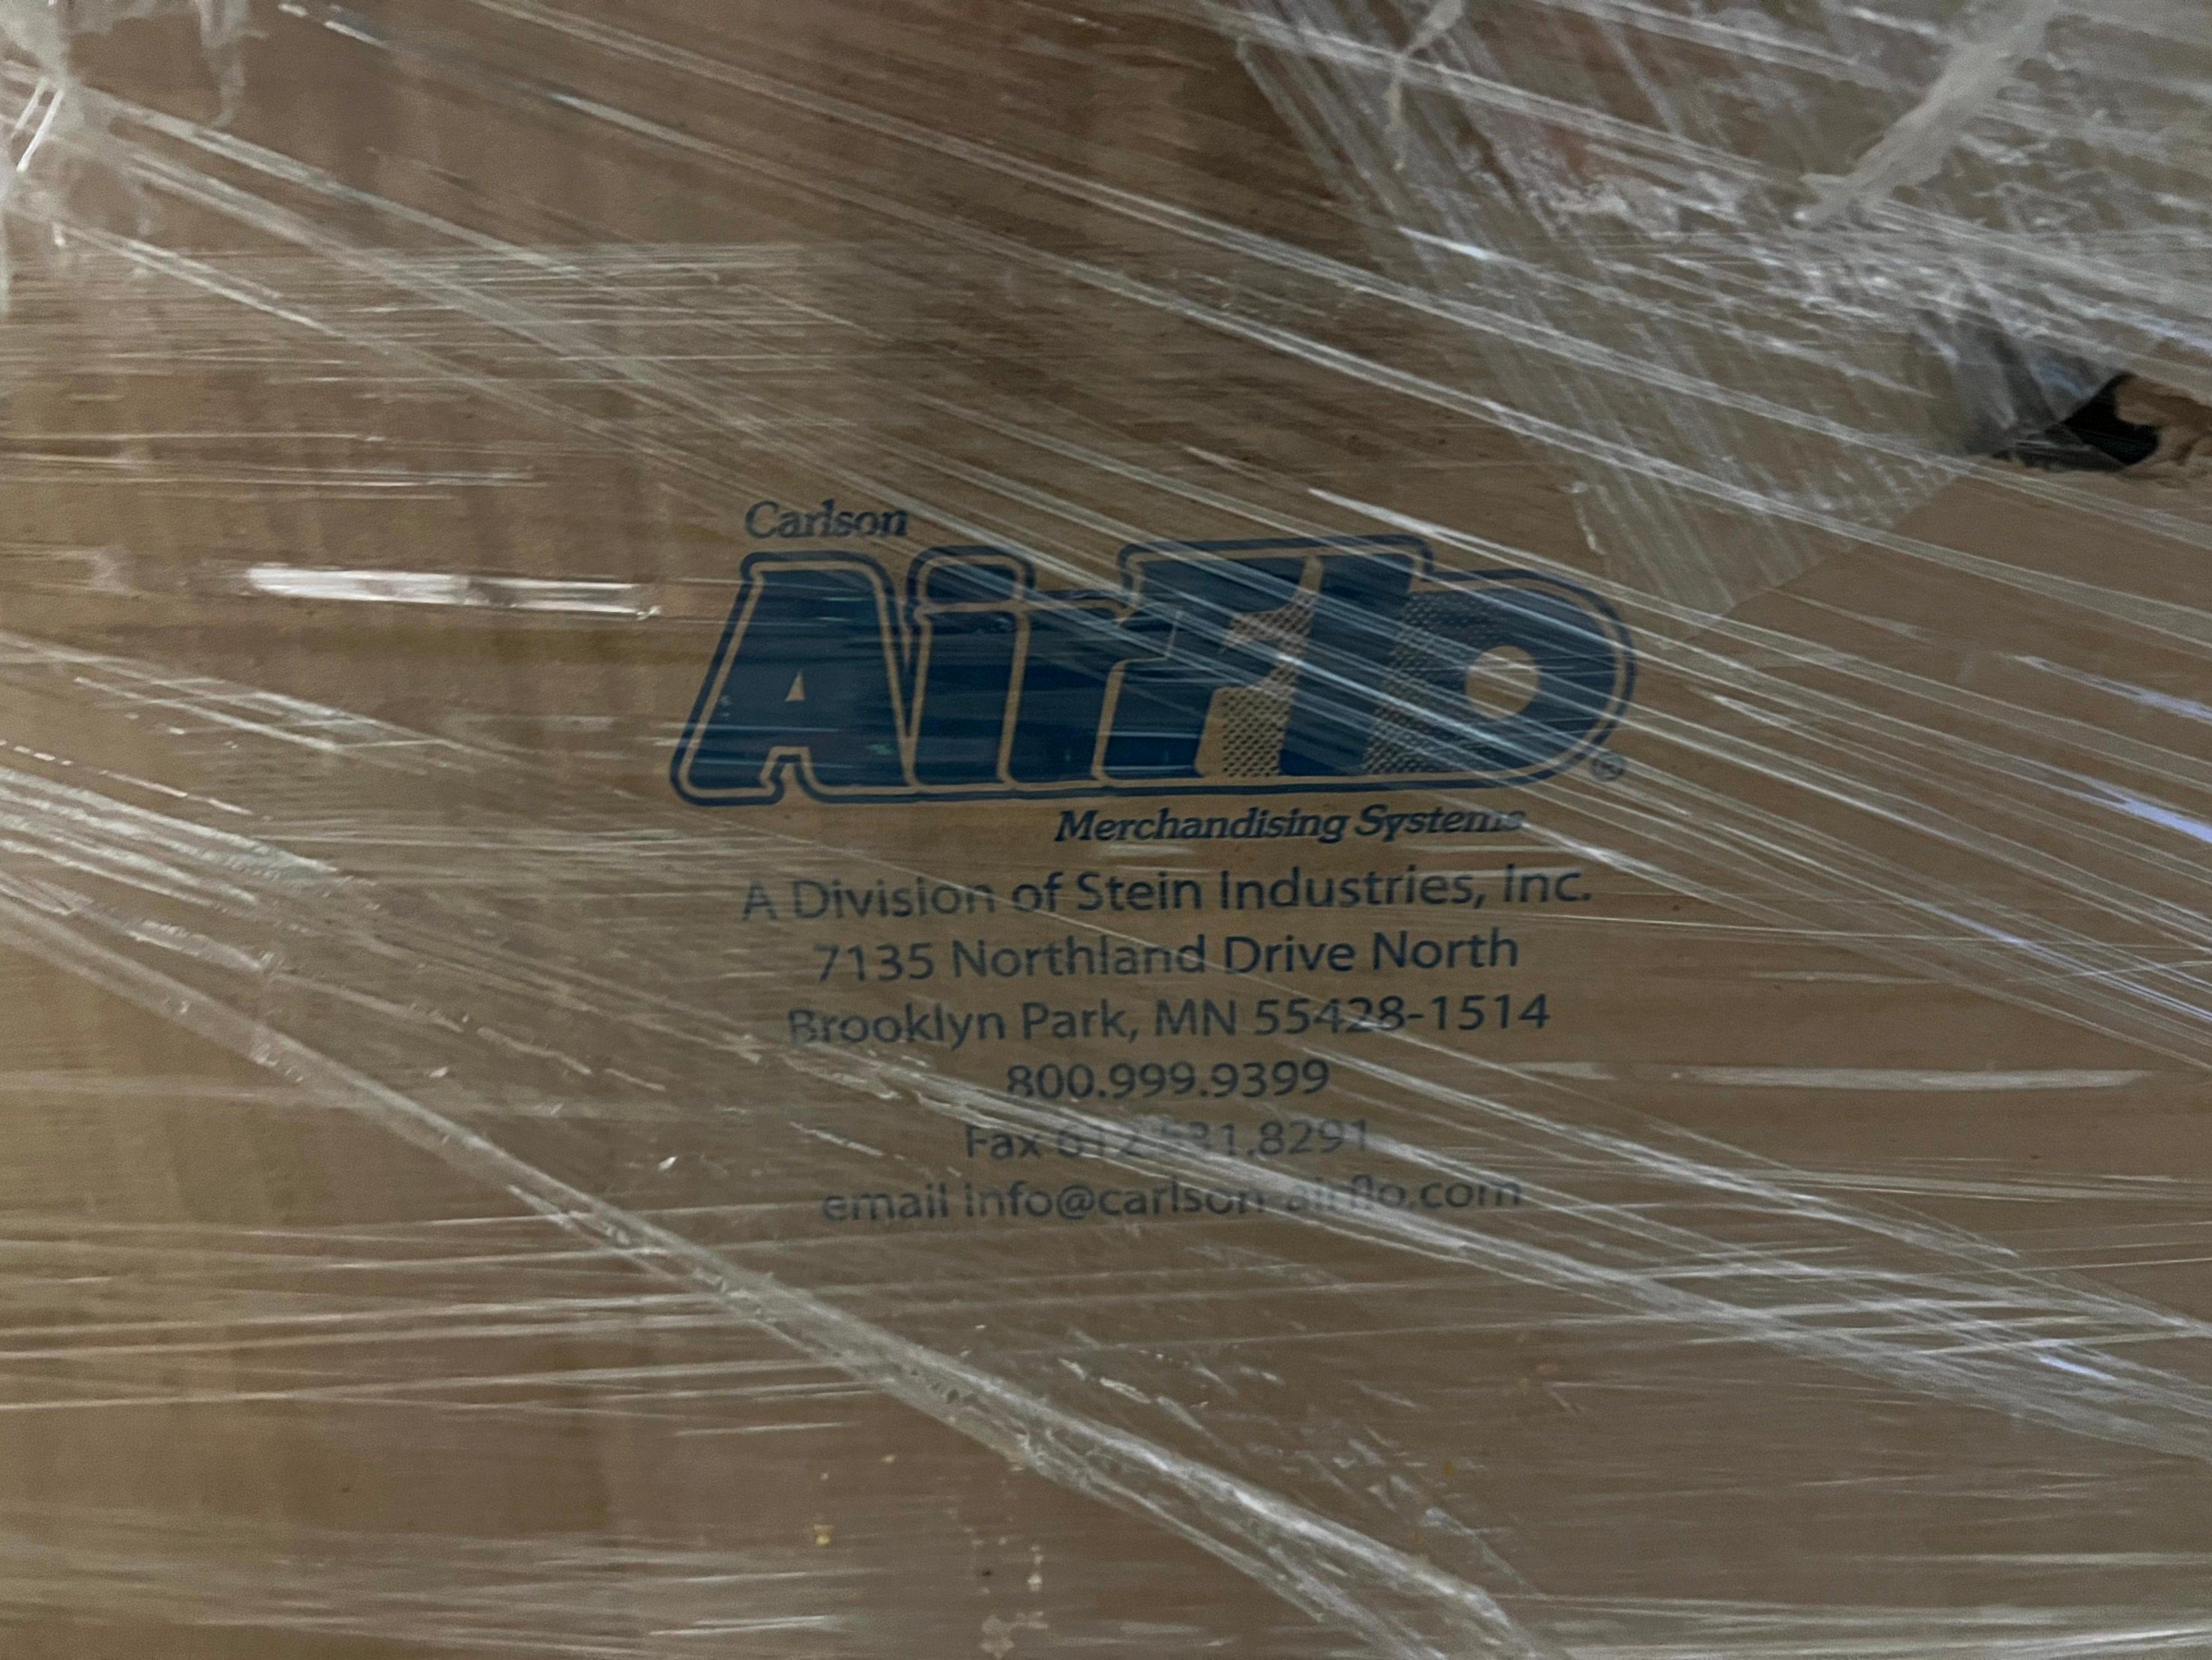 Pallet of Airfi Merchandiser Parts